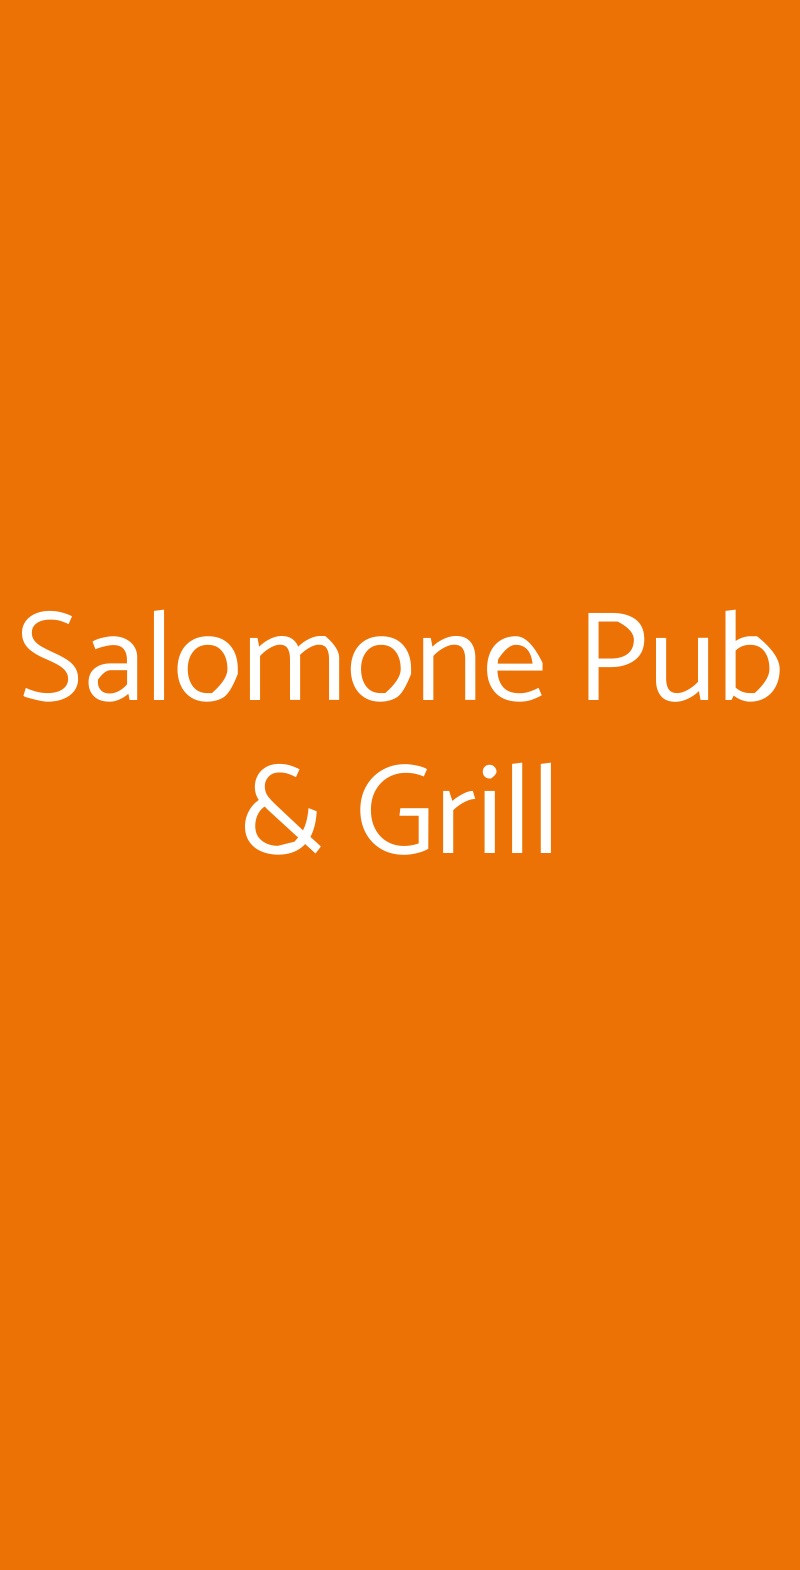 Salomone Pub & Grill Napoli menù 1 pagina